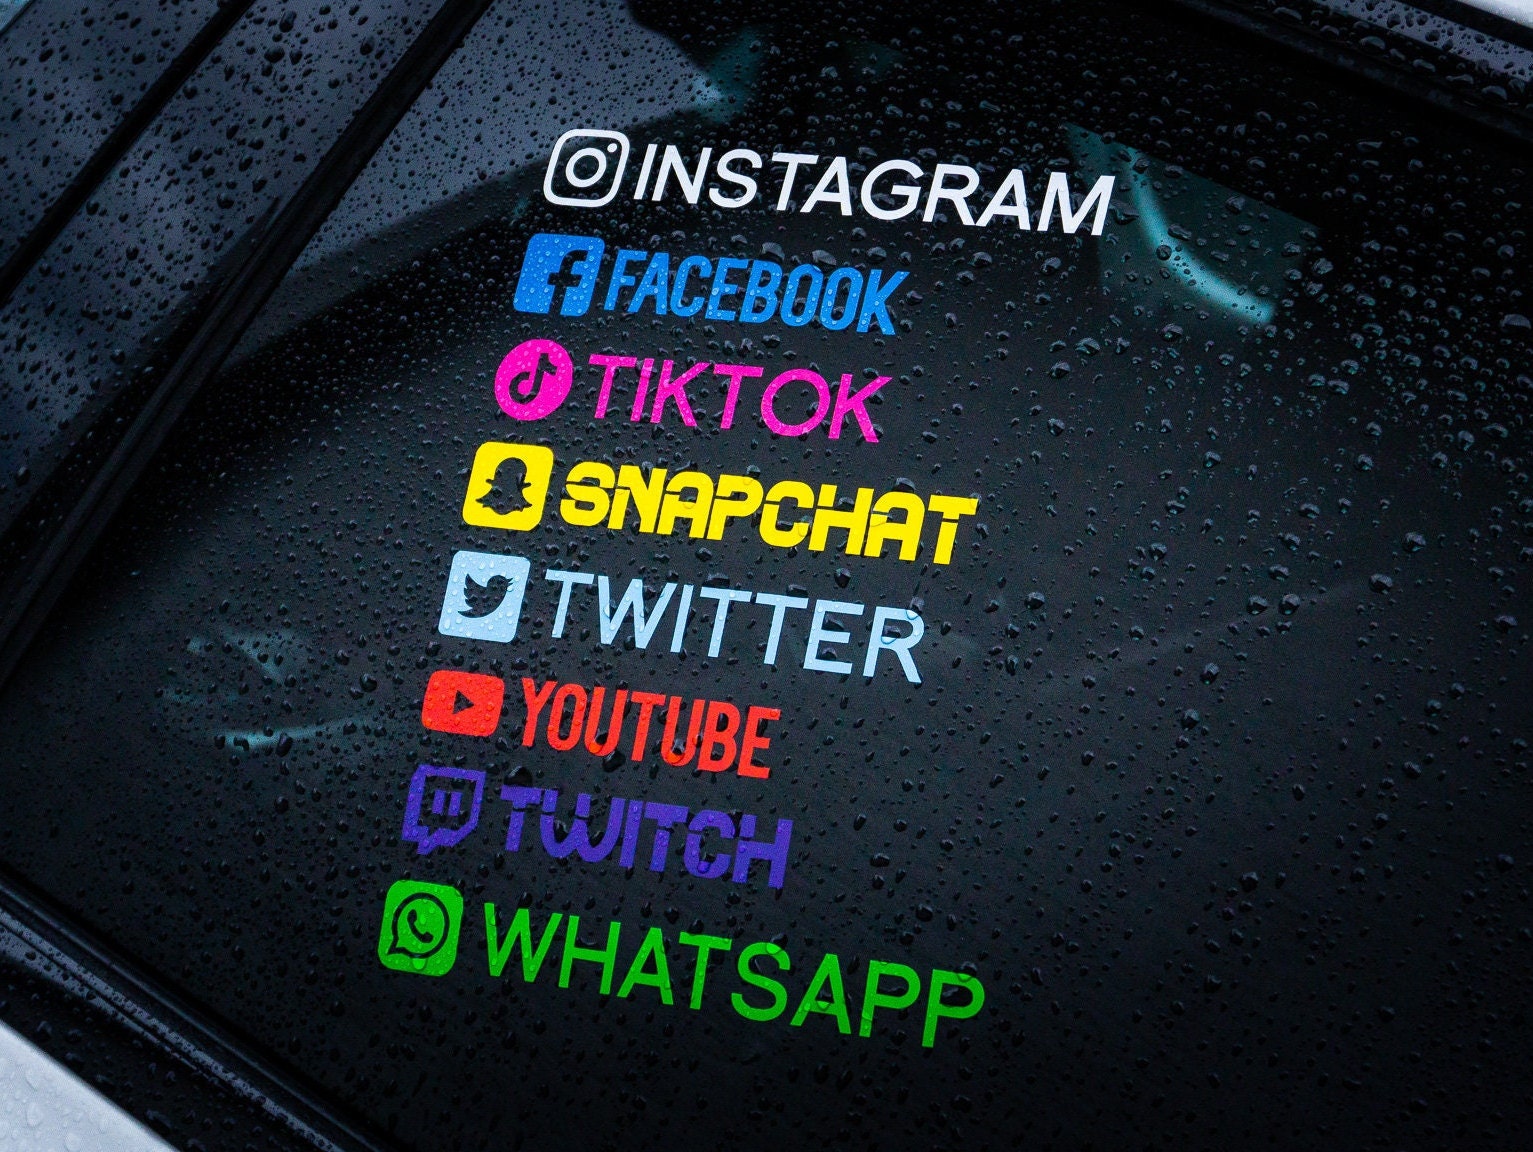 Instagram Aufkleber Namen selbst gestalten für Seiten Werbung Auto